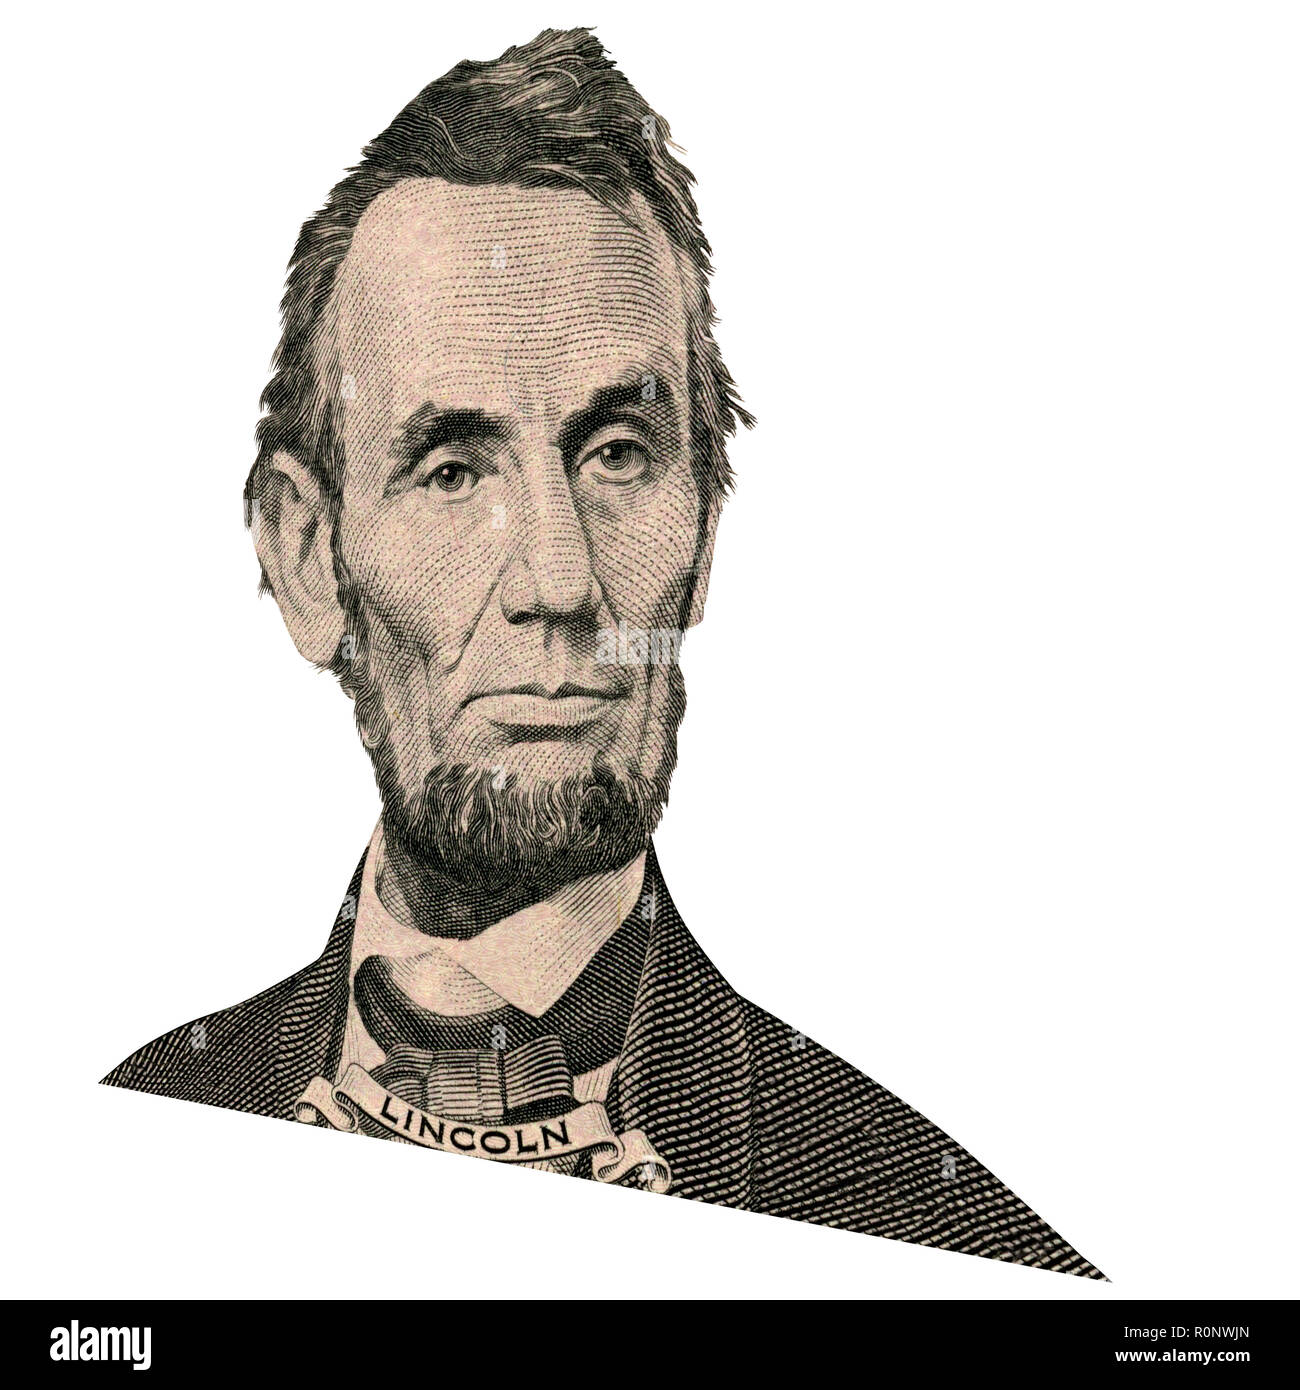 Portrait de l'ancien président américain Abraham Lincoln comme il a l'air sur l'avers de cinq dollars. Photo à un angle de 15 degrés. Banque D'Images